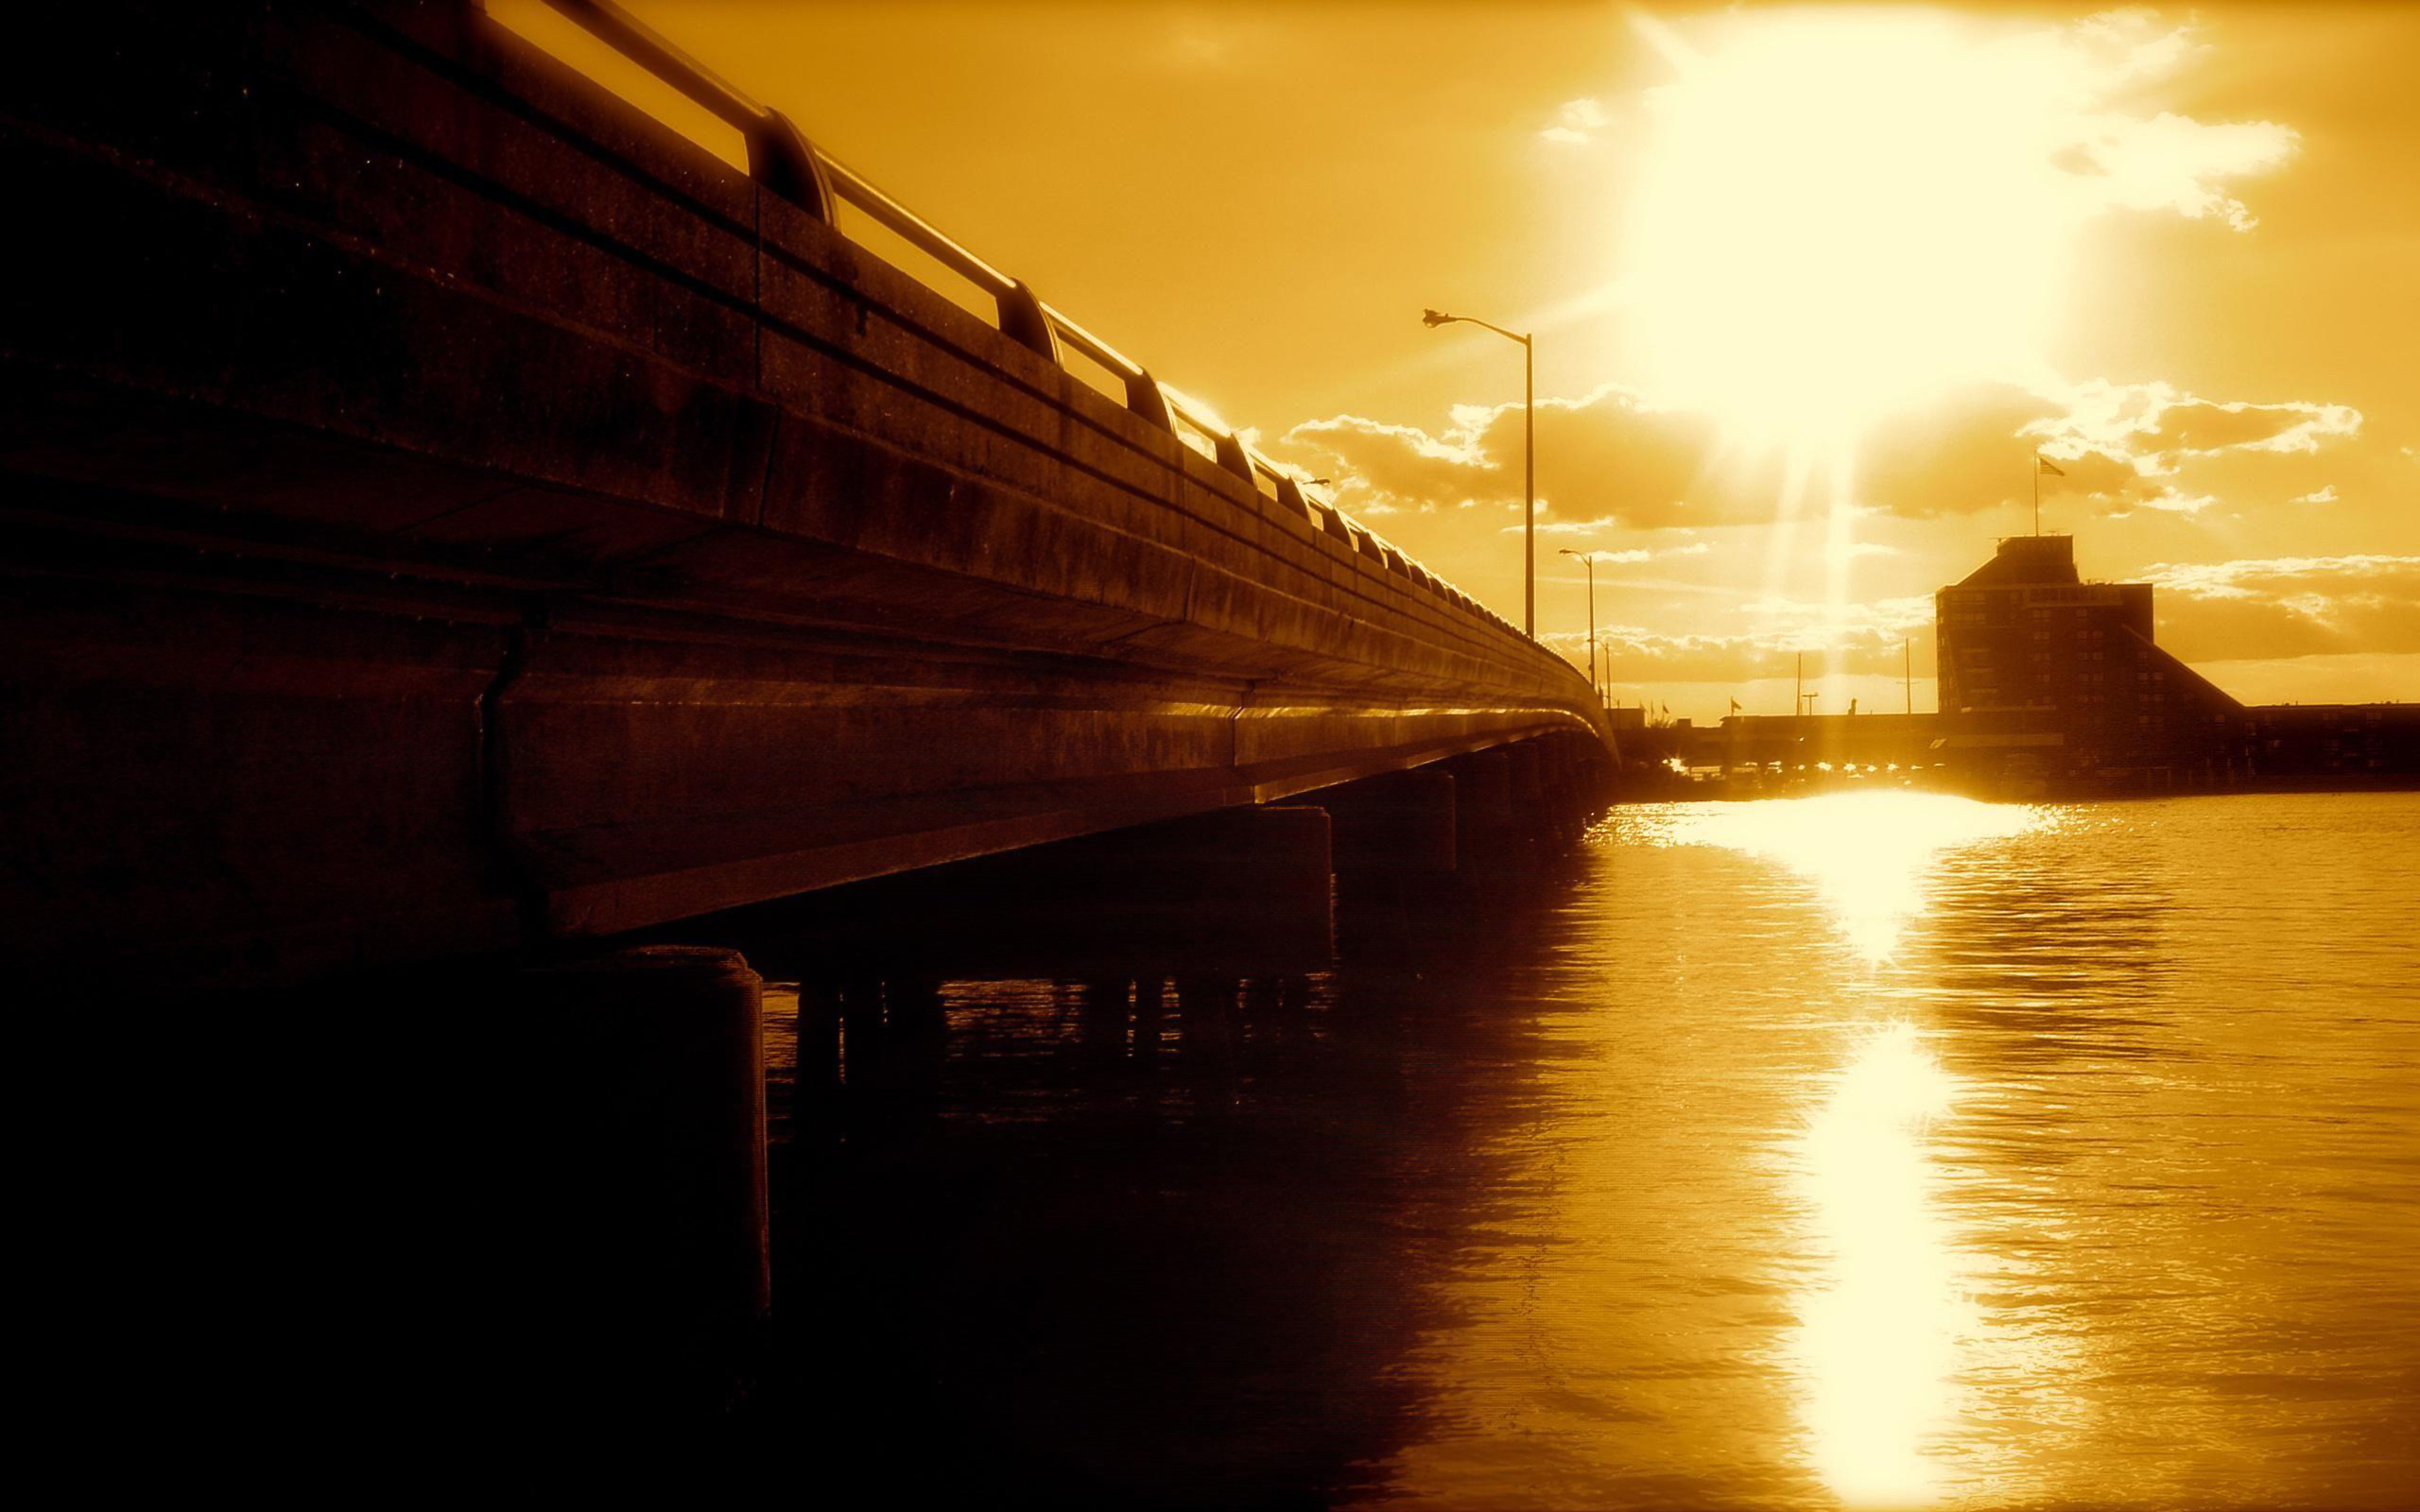 Bridge sunset reflection